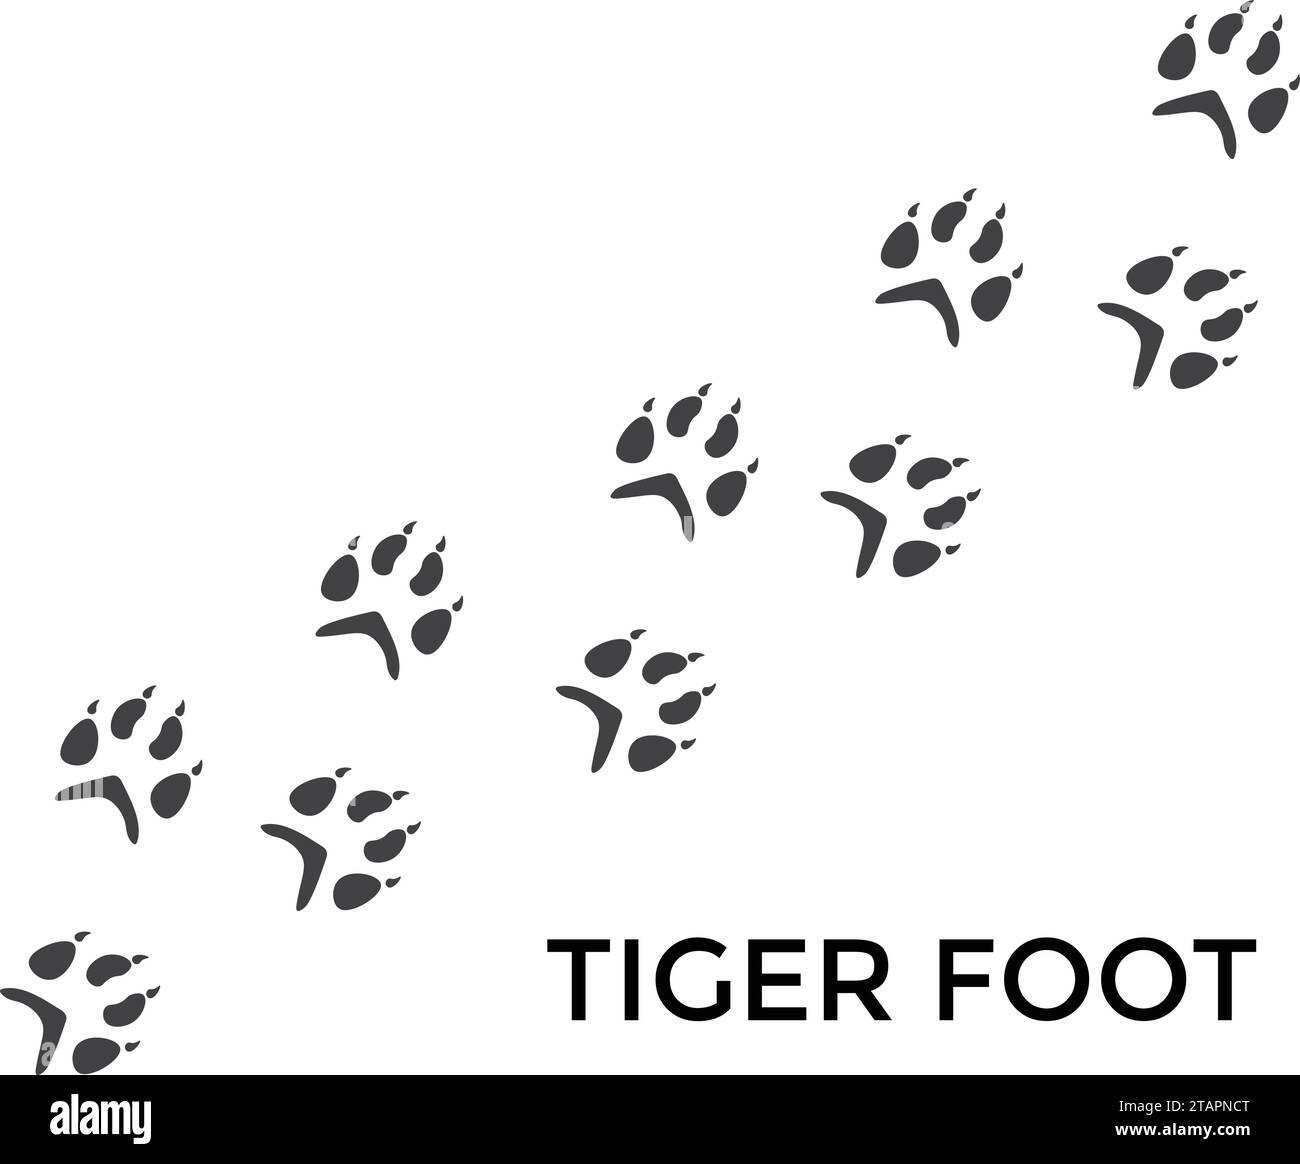 Stampa della zampa tigre. Animale selvatico. La zampa isolata viene stampata su sfondo bianco Illustrazione Vettoriale